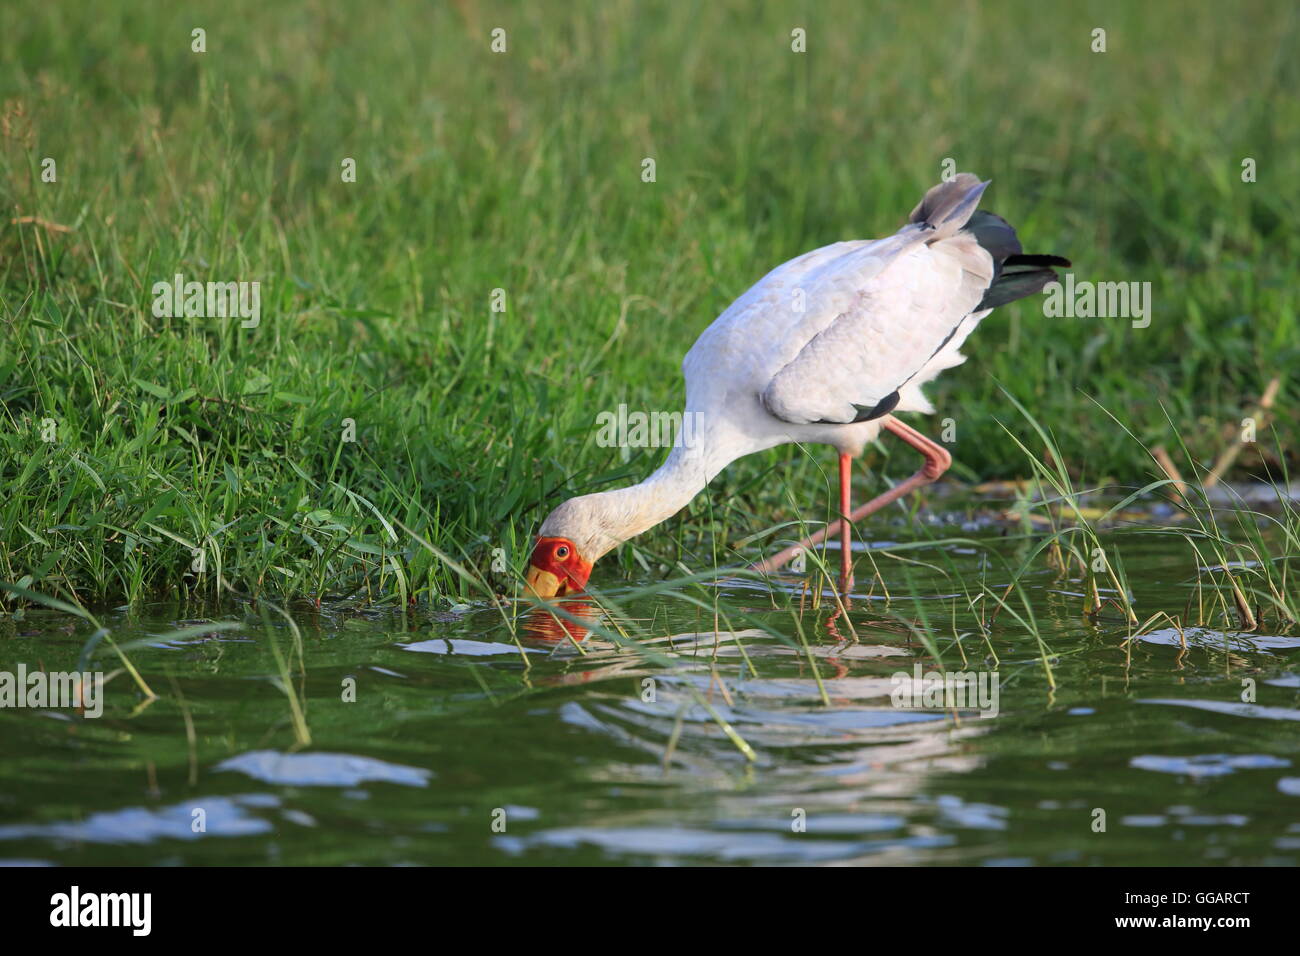 Yellow-billed stork (Mycteria ibis) in Queen Elizabeth National Park, Uganda Stock Photo